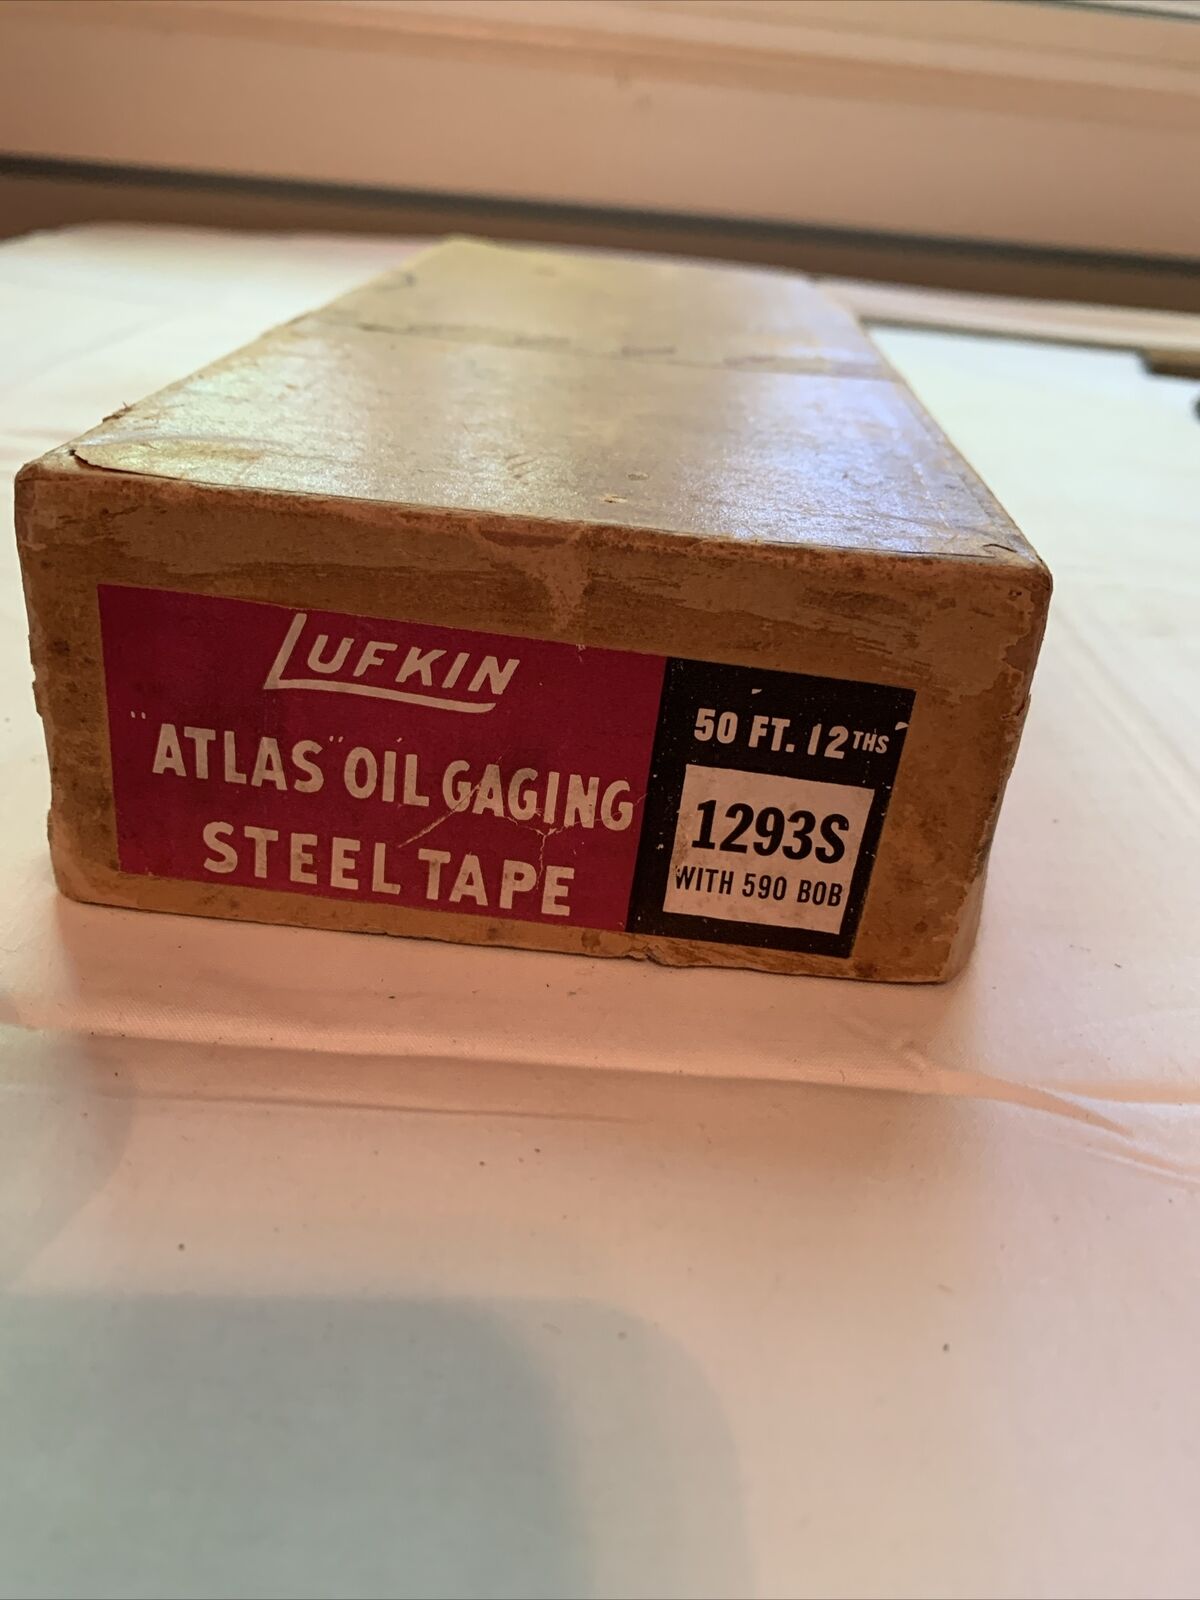 Lufkin Atlas Oil Gaging Tape In Box 50 FT.